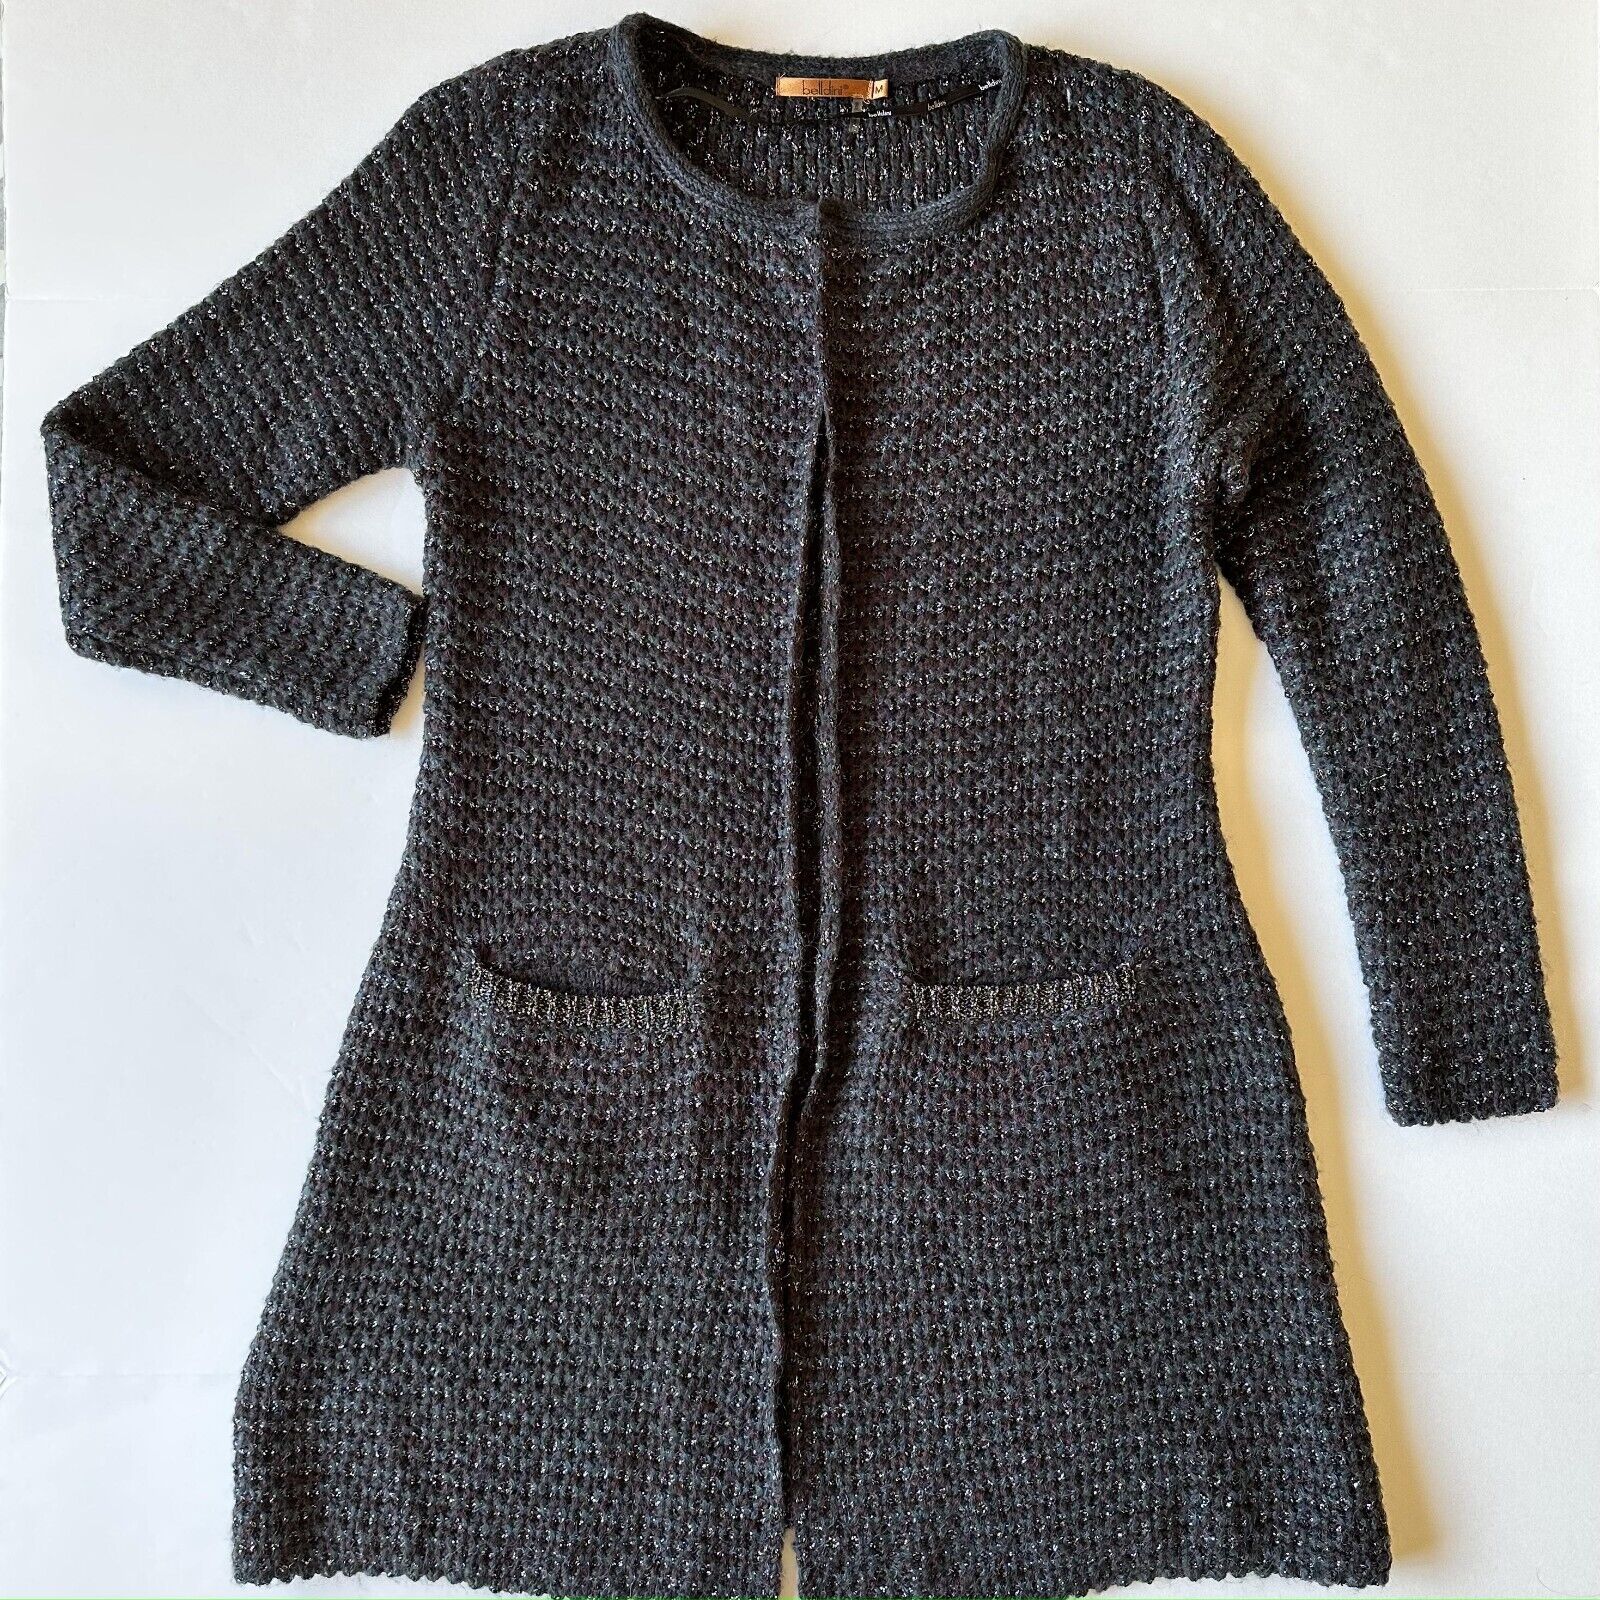 Belldini Women Open Cardigan Jacket Black Long Sleeve Sweater Pocket Size M Knit